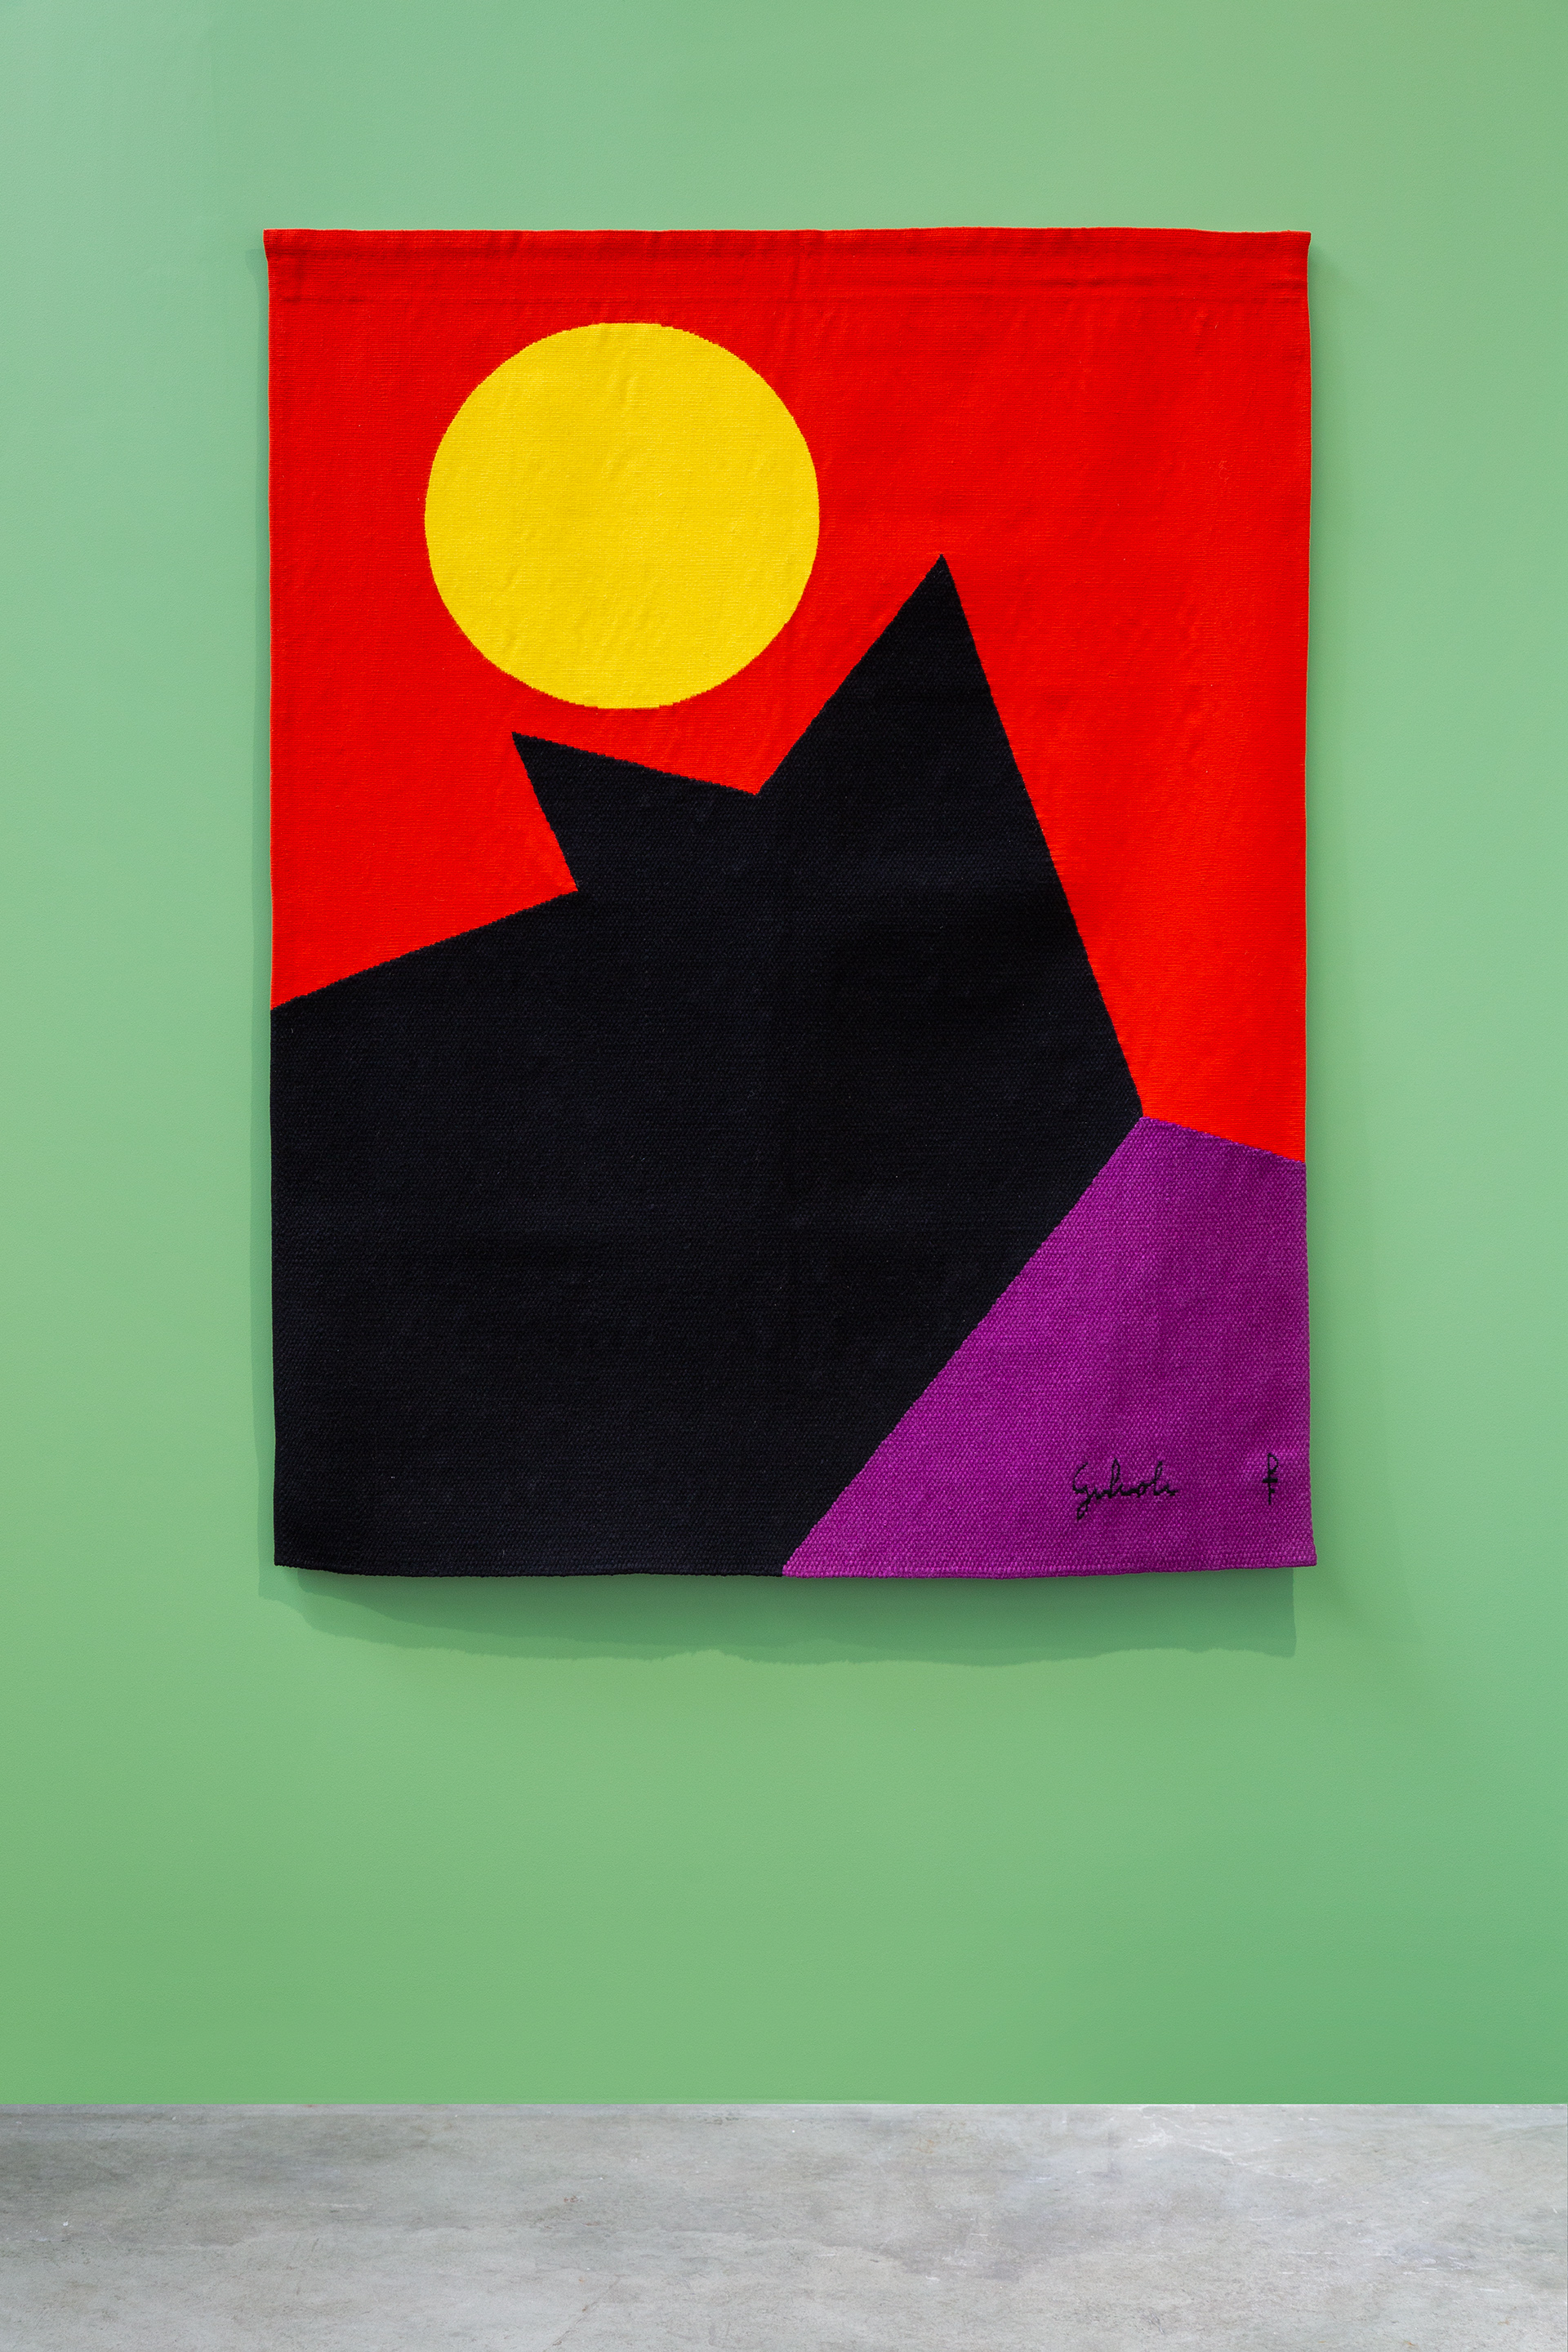 Textiles

Emile Gilioli, Déjeuner de soleil, Basse-lisse, 165 x 128 cm

photographie ©EmilieVialet